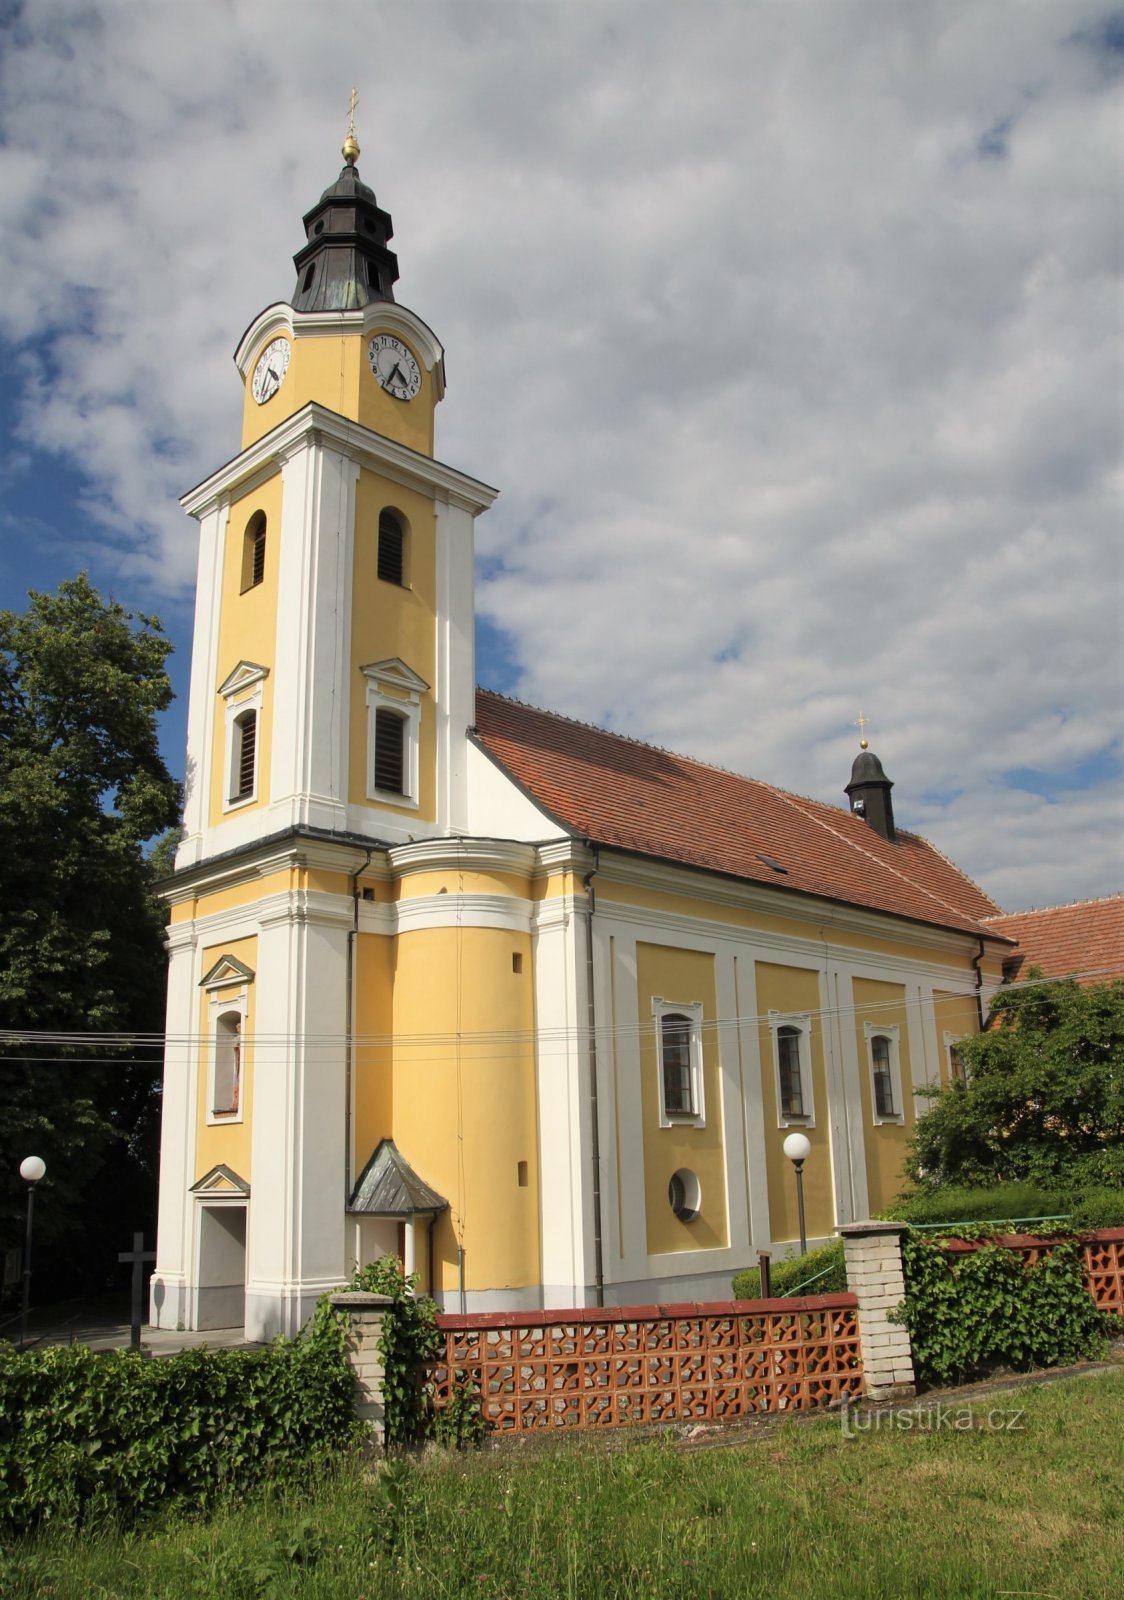 Mutěnice - igreja de St. Catarina